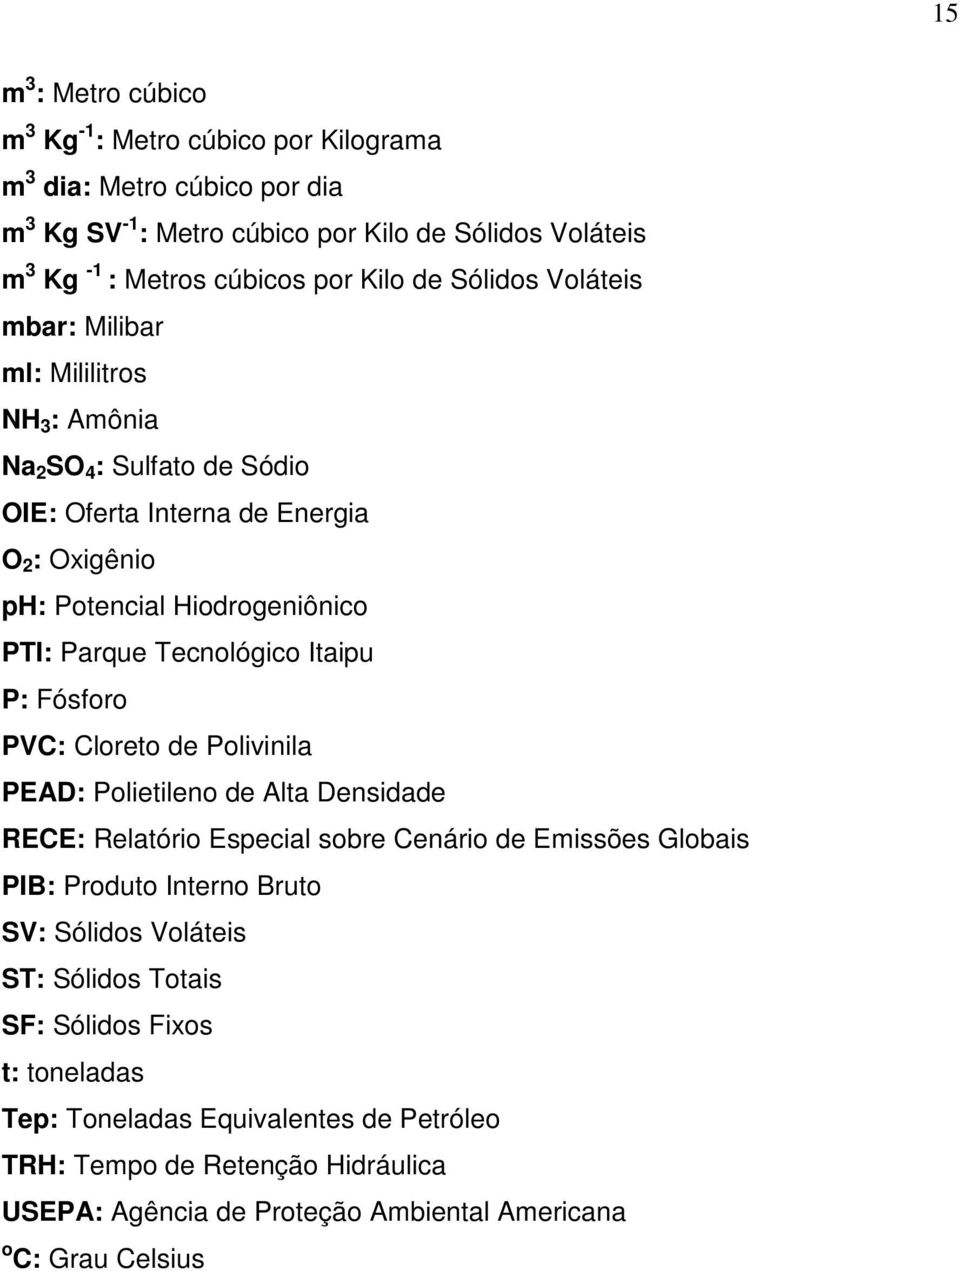 Tecnológico Itaipu P: Fósforo PVC: Cloreto de Polivinila PEAD: Polietileno de Alta Densidade RECE: Relatório Especial sobre Cenário de Emissões Globais PIB: Produto Interno Bruto SV: